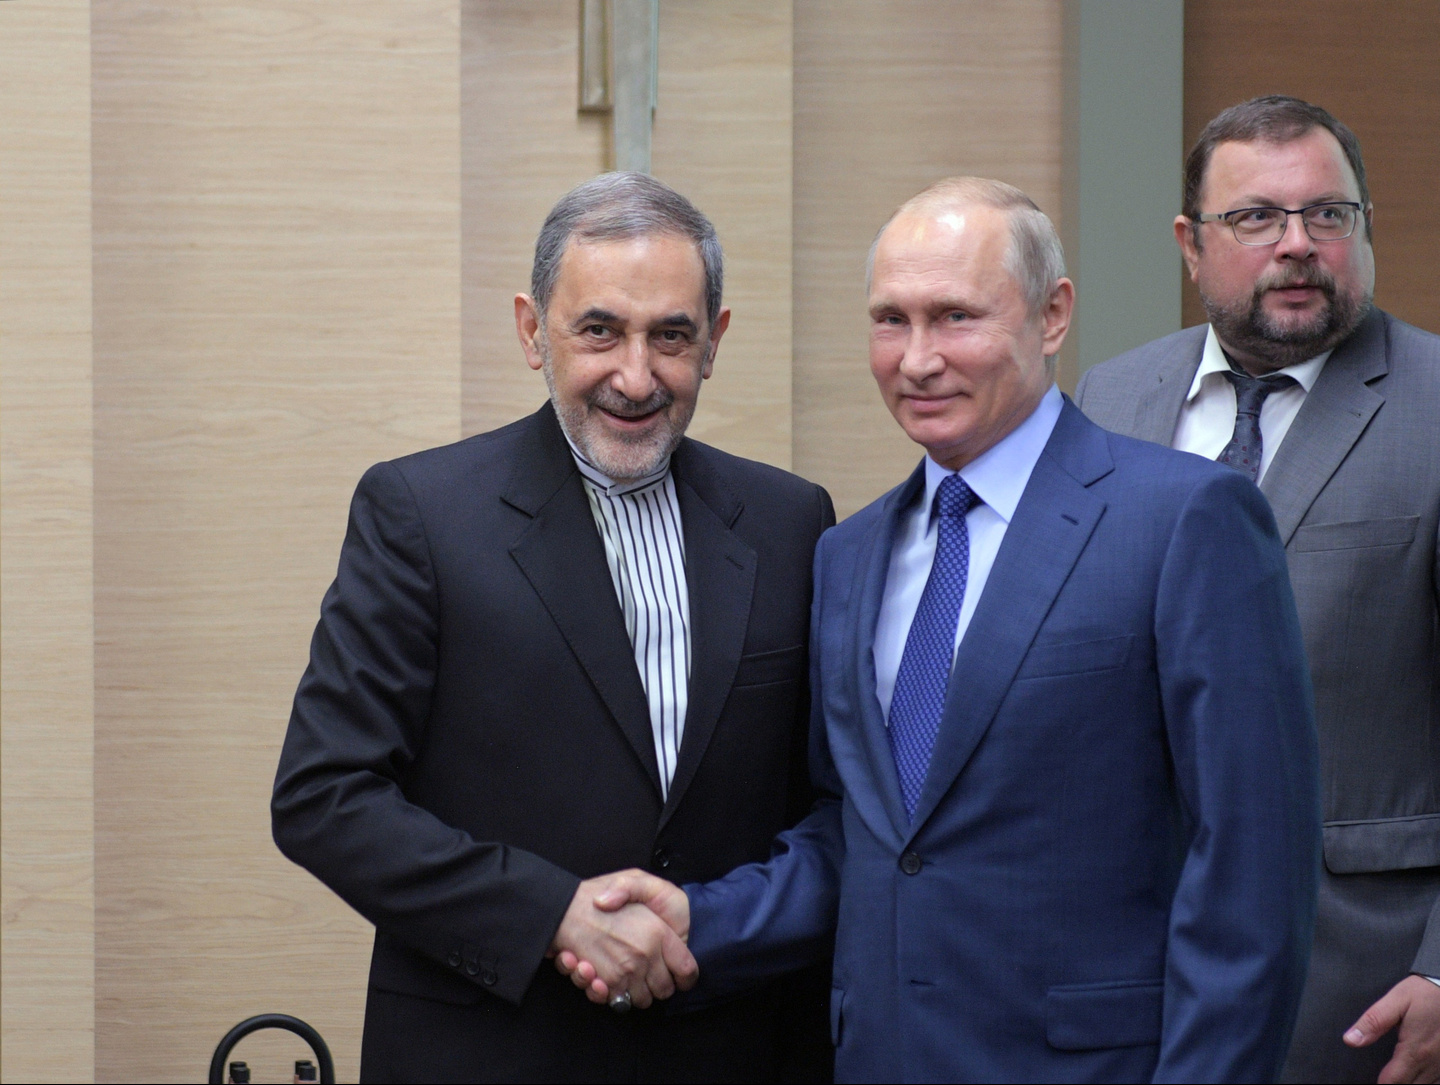 Путин провёл переговоры с советником верховного лидера Ирана